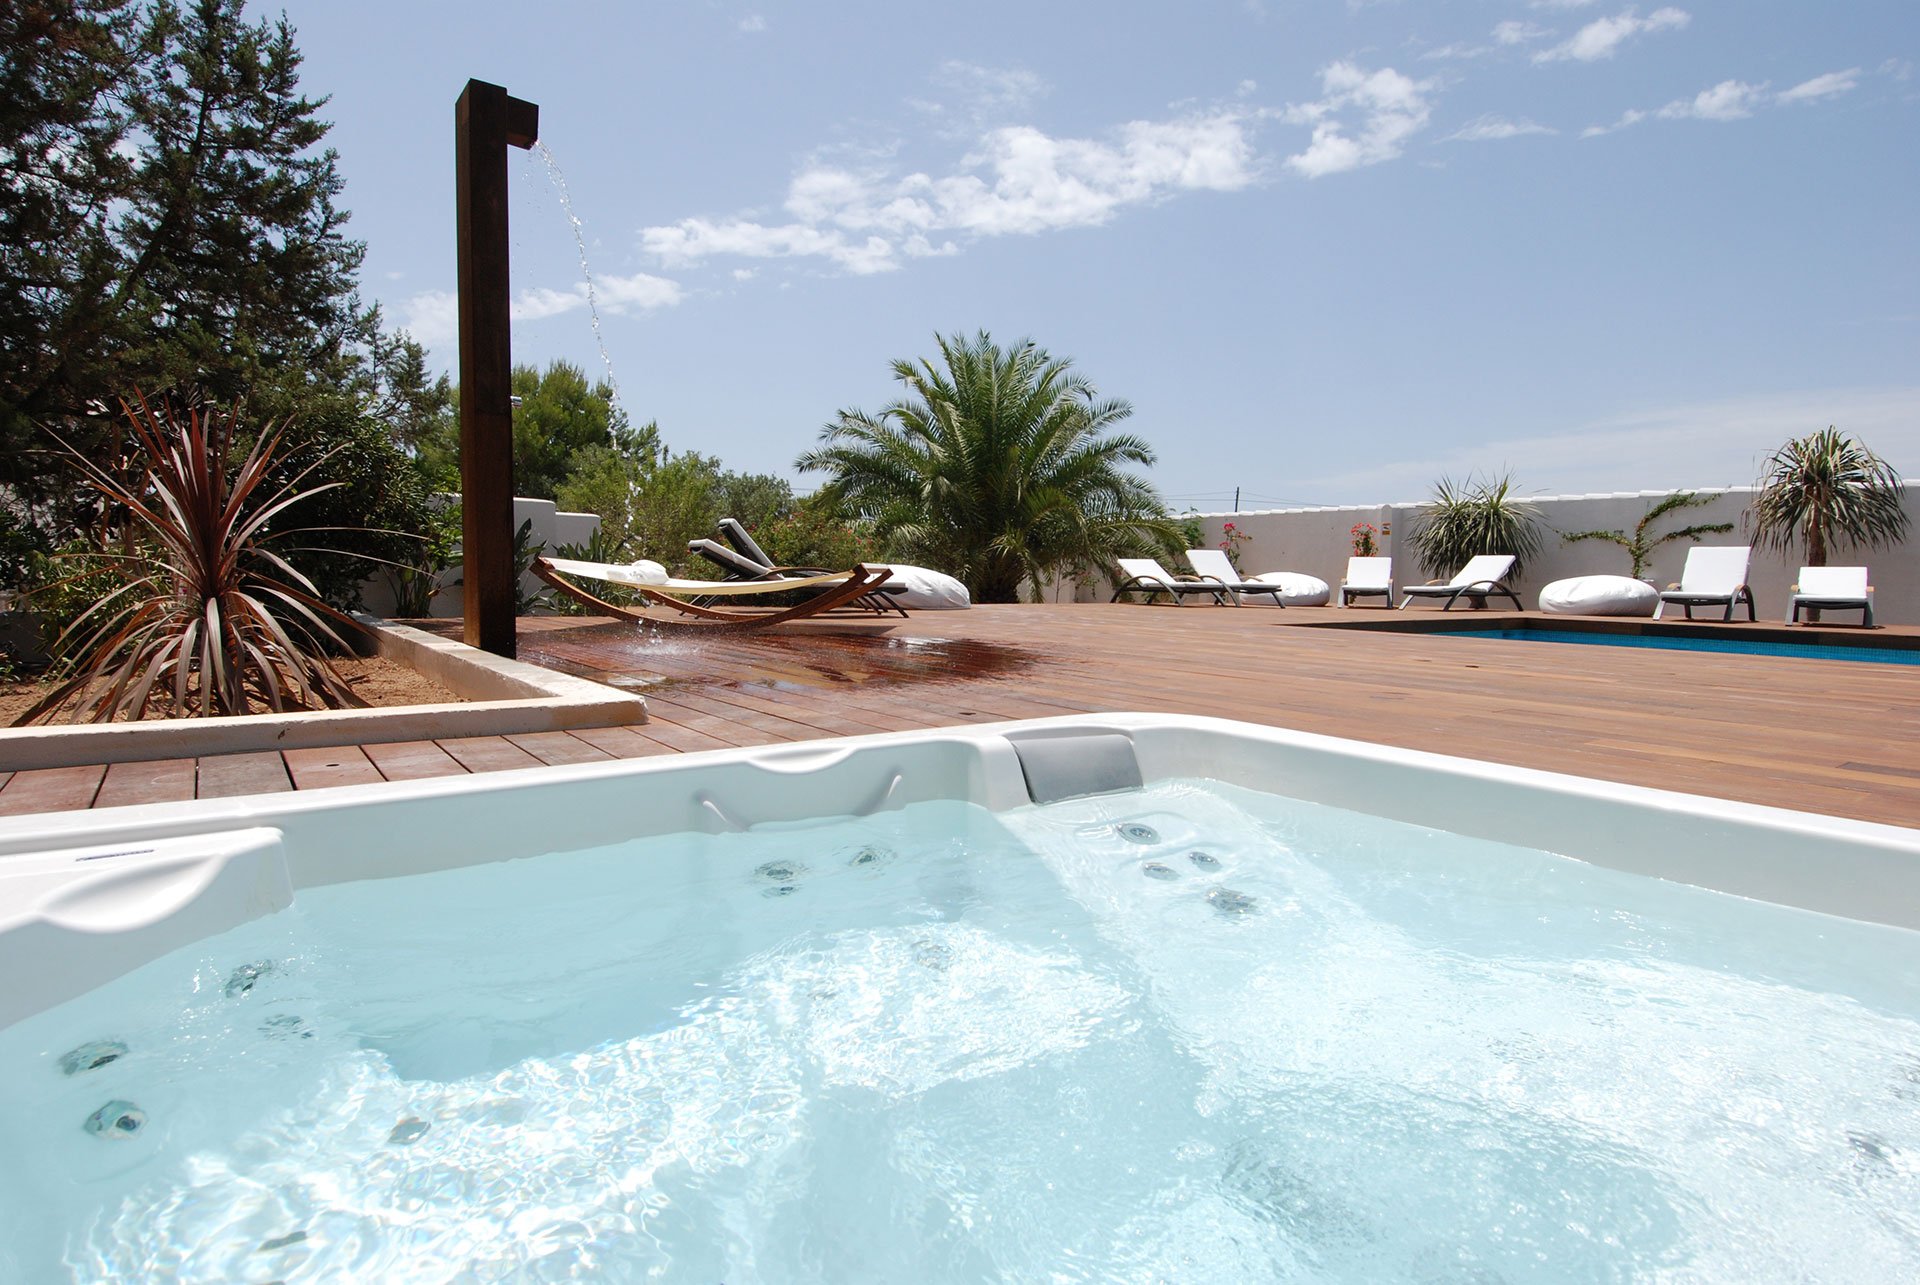 La Hacienda es el mejor alojamiento en Formentera según Booking: “El paraíso existe”